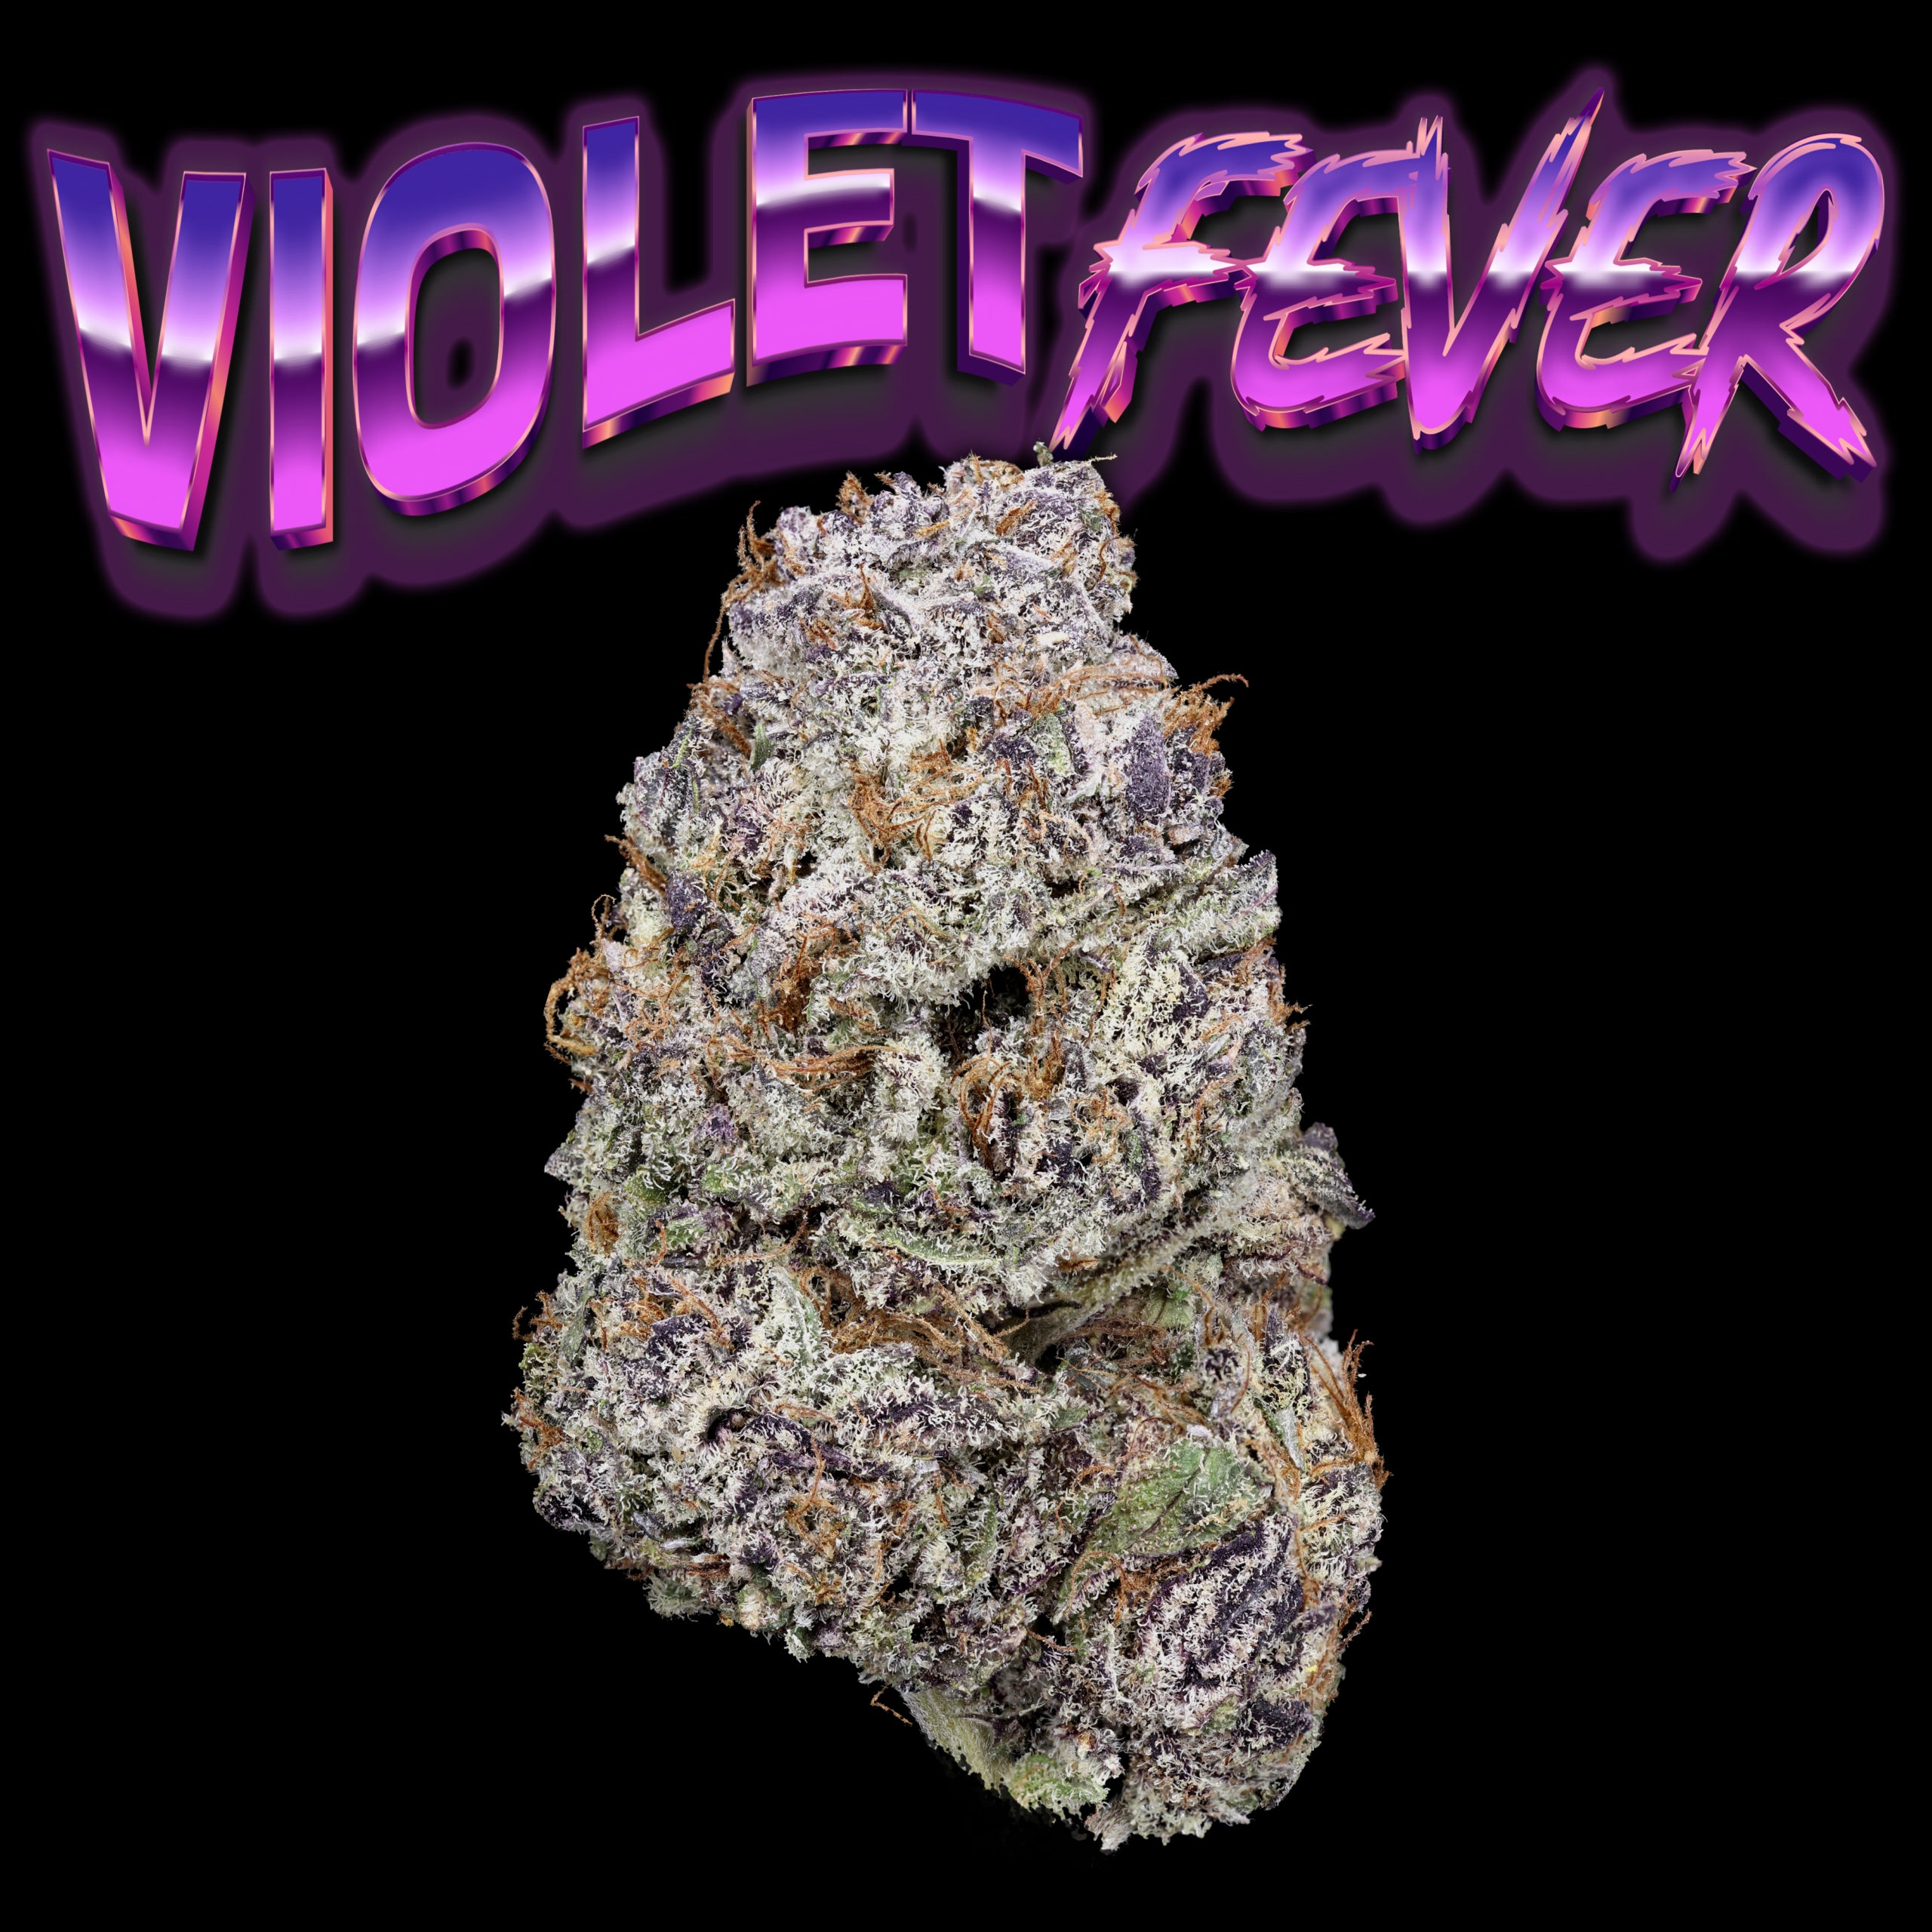 Violet Fever nug